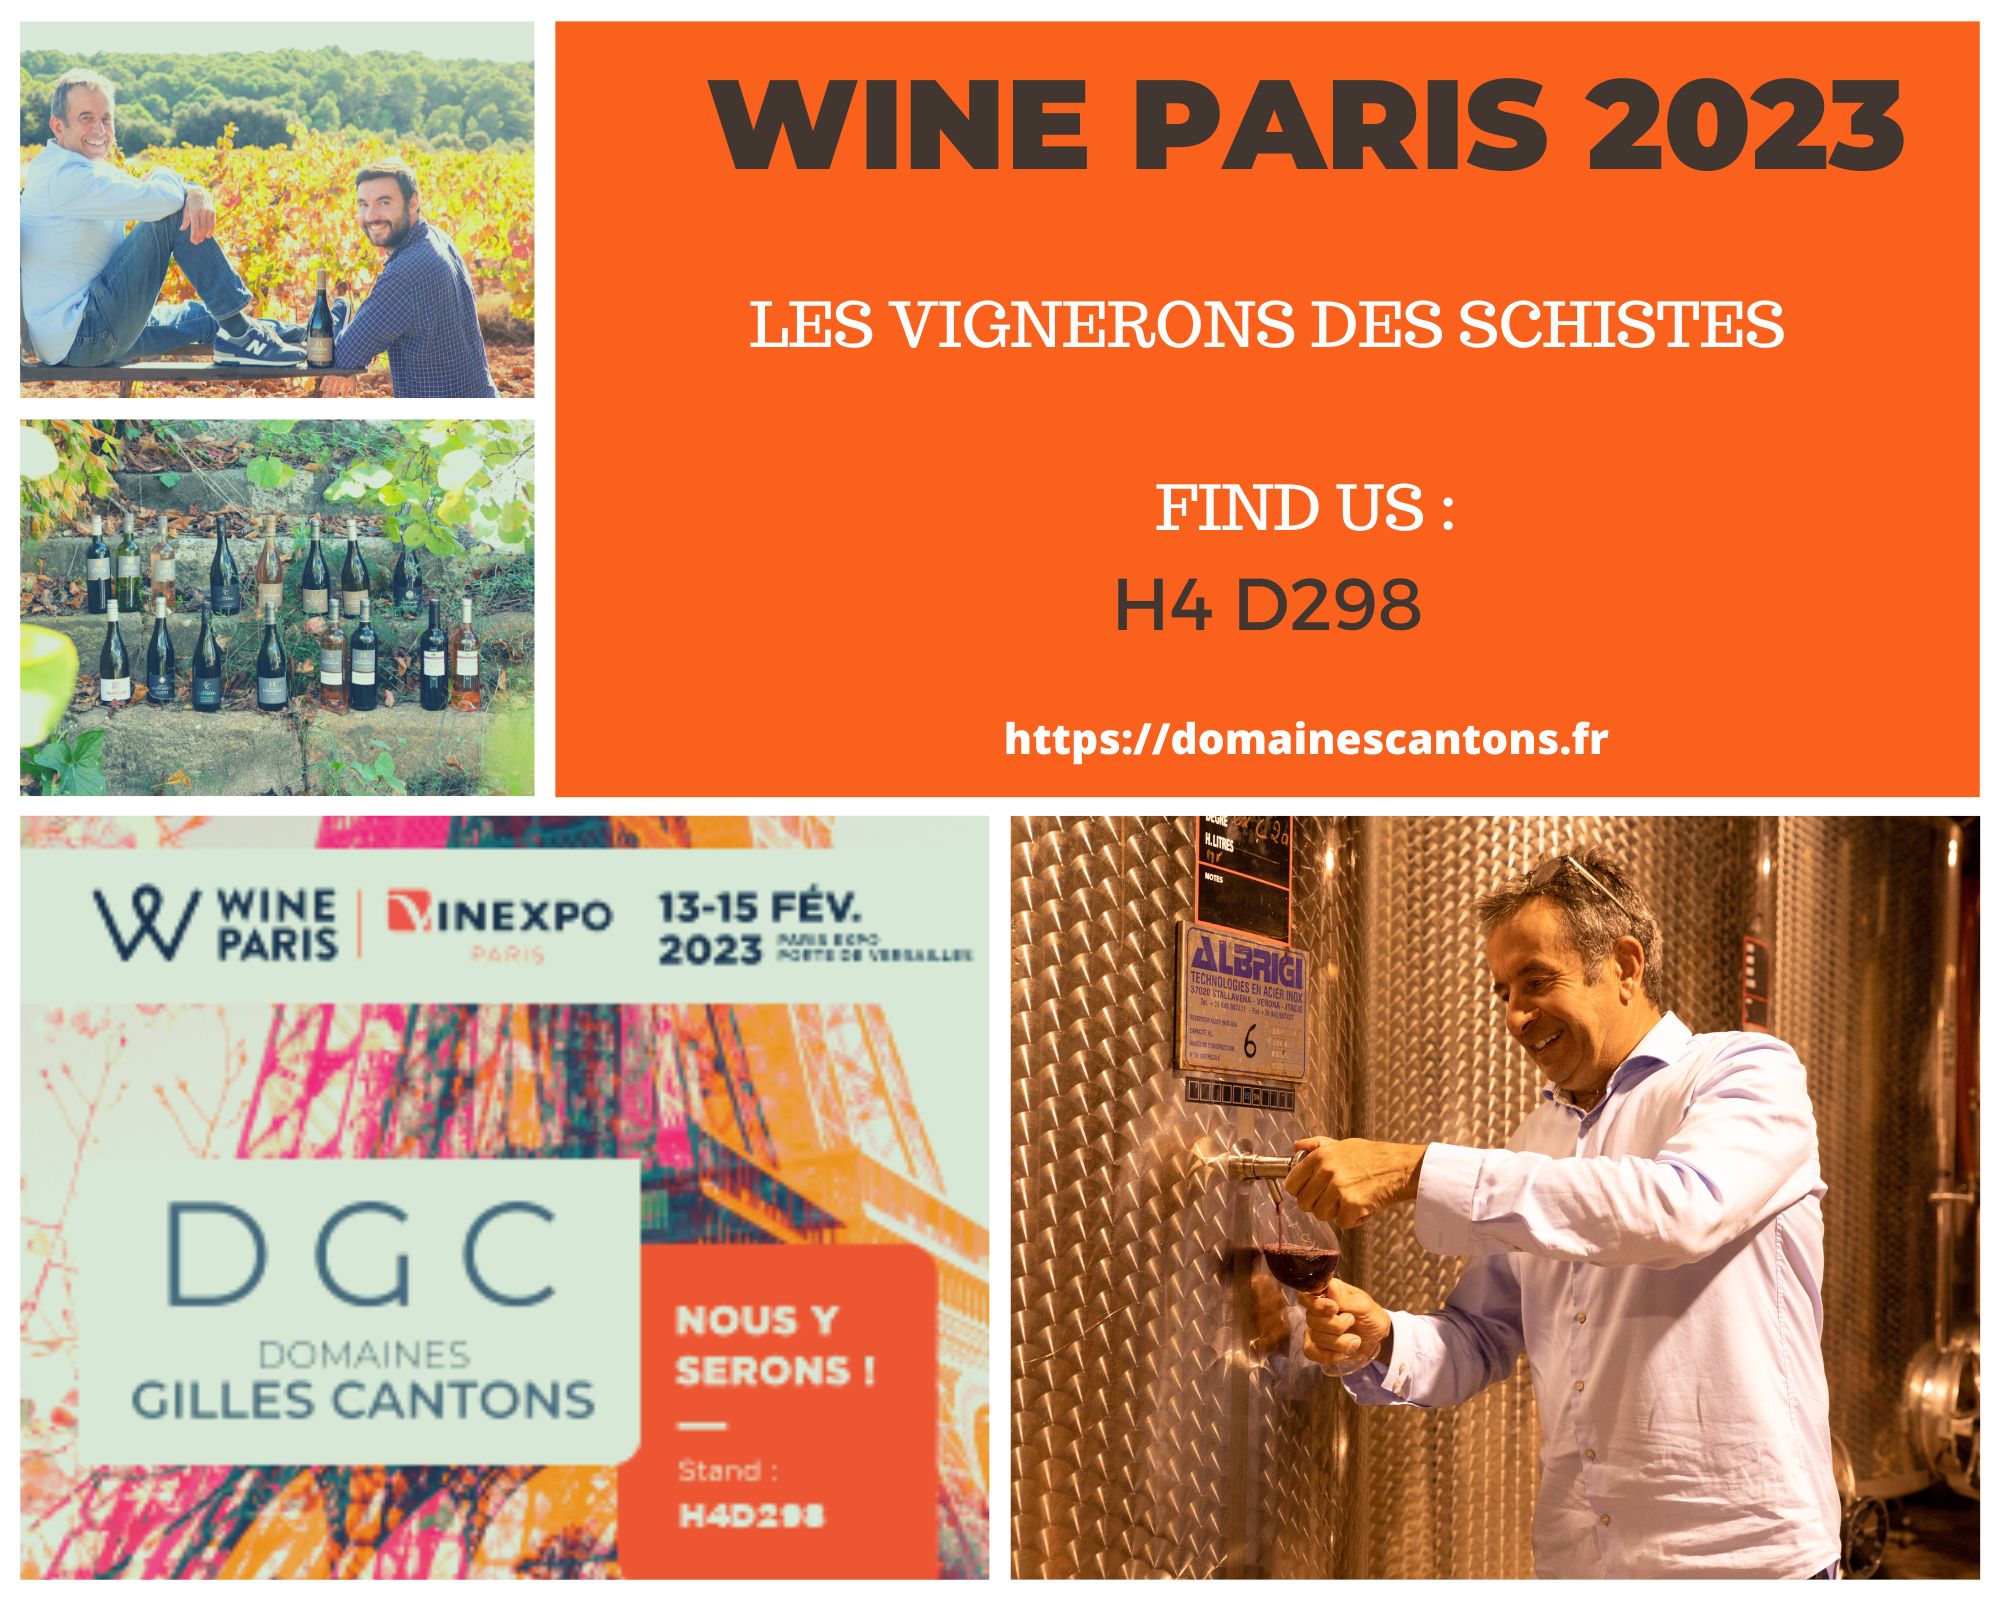 WINE PARIS 2023 - VIGNERONS DES SCHISTES